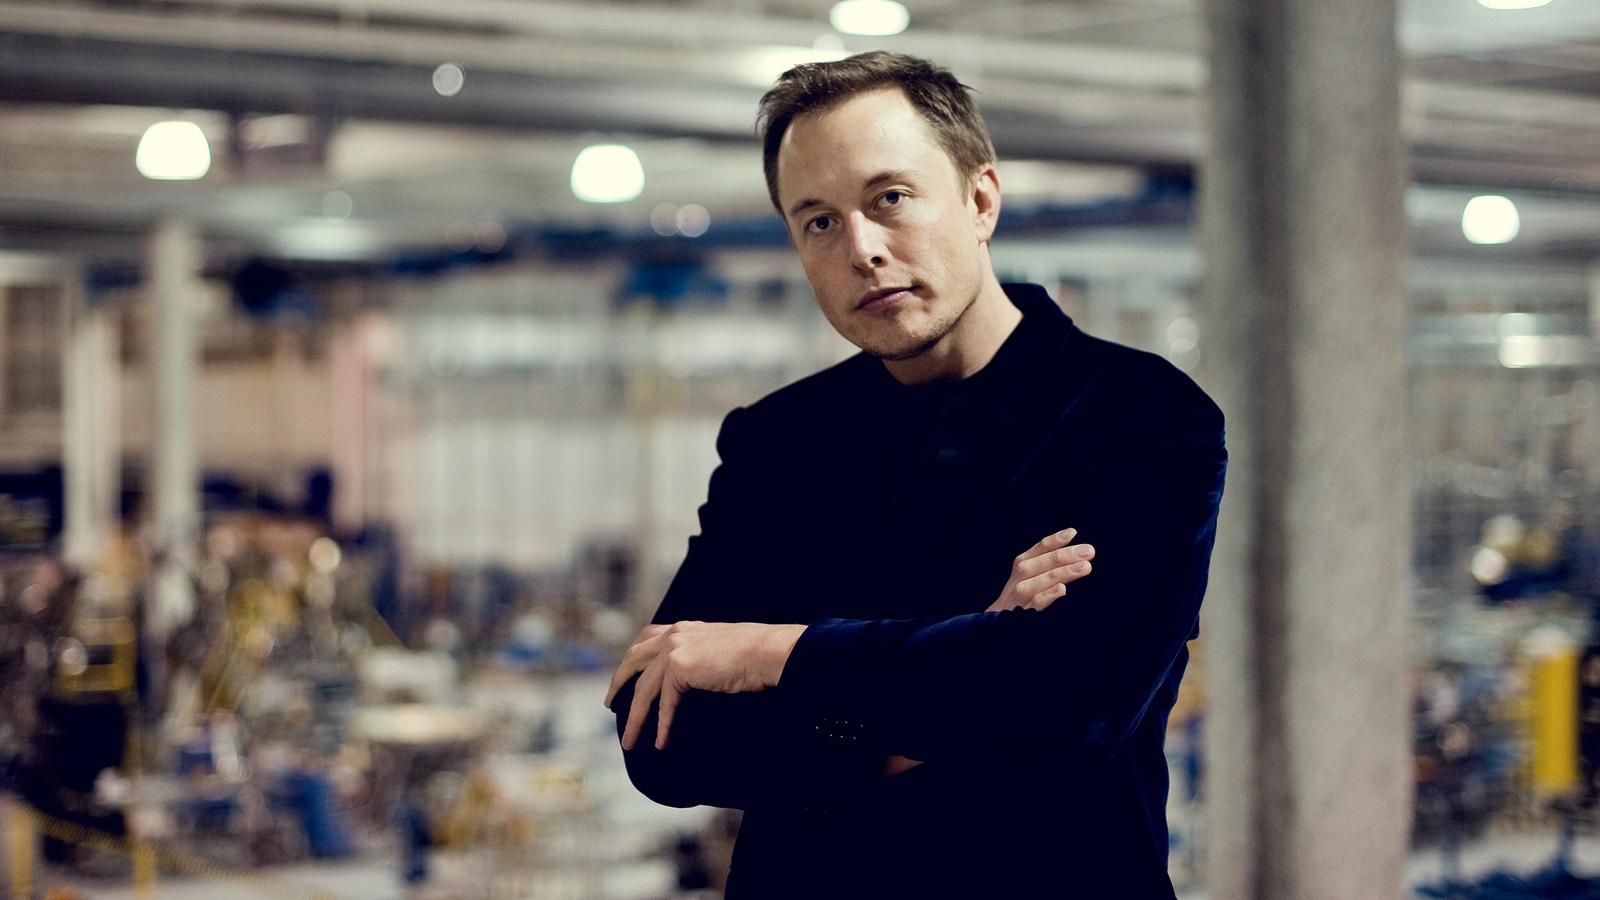 Danach hat ilon Musk hat zugegeben, dass Tesla entwickelt eigene KI-Prozessoren